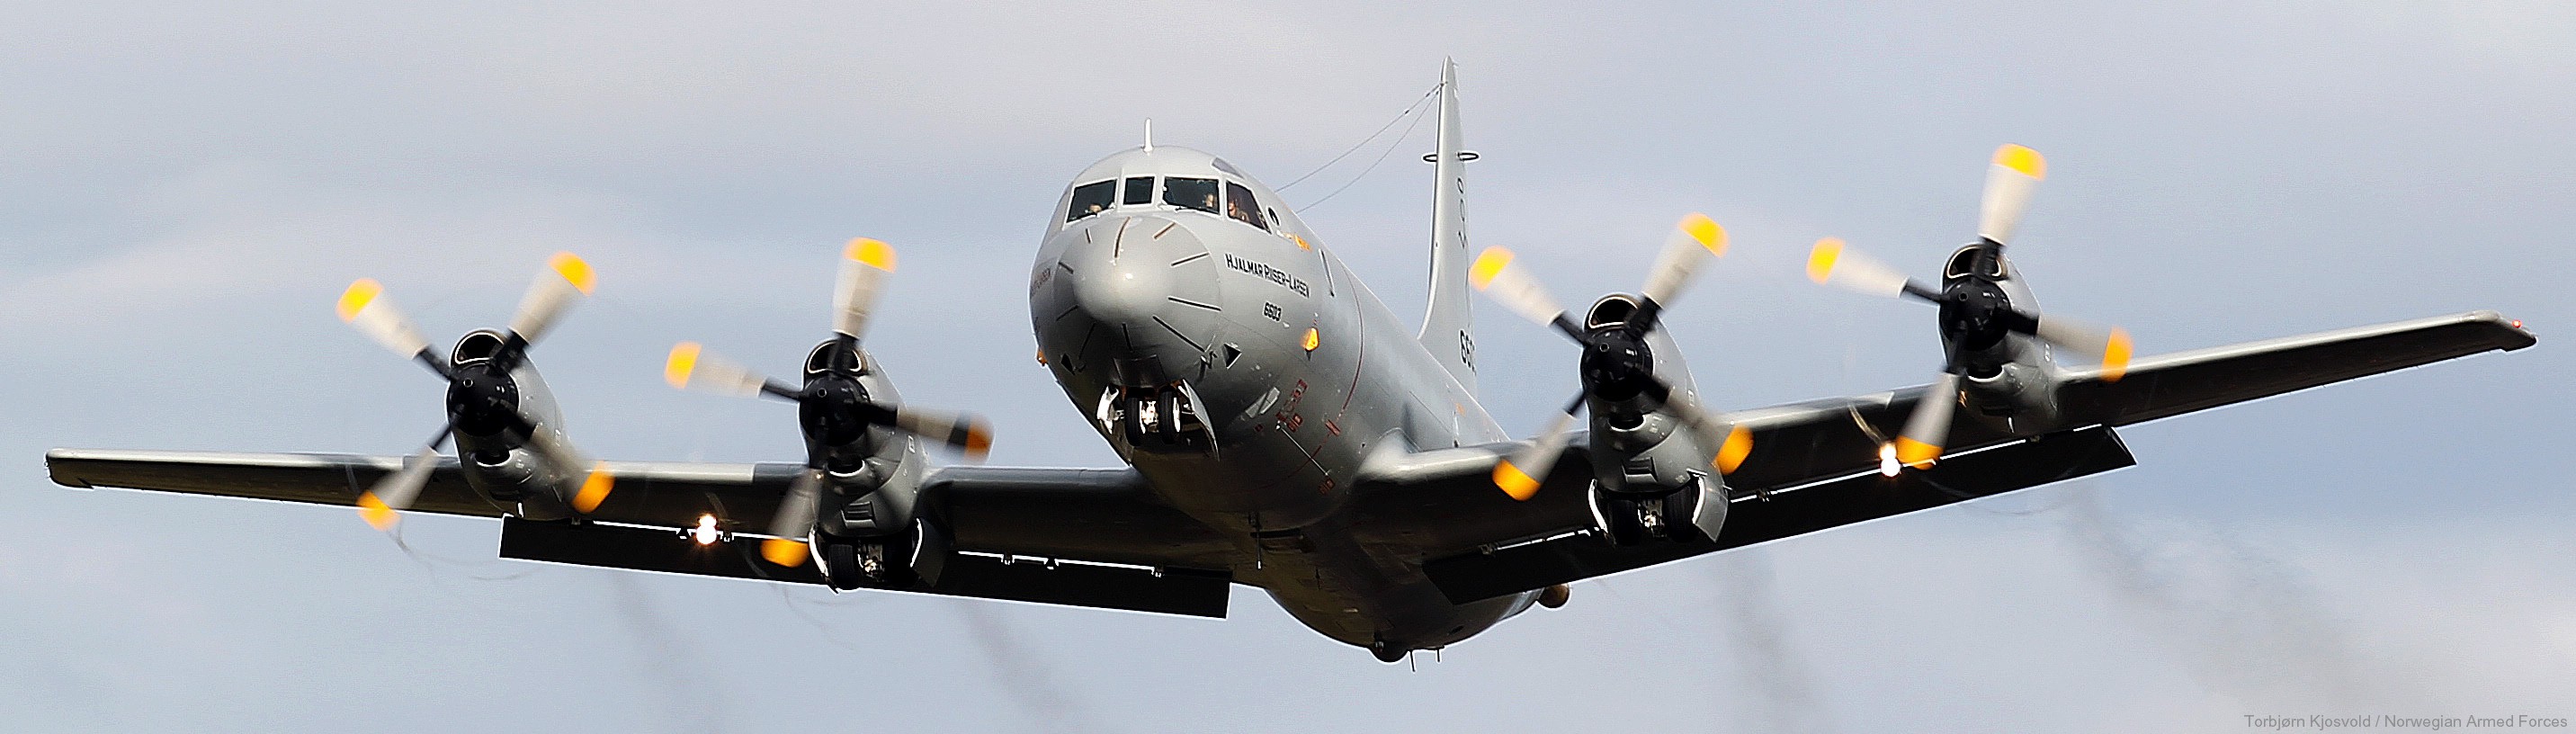 lockheed p-3n orion hjalmar riiser larsen 6603 patrol royal norwegian air force 05